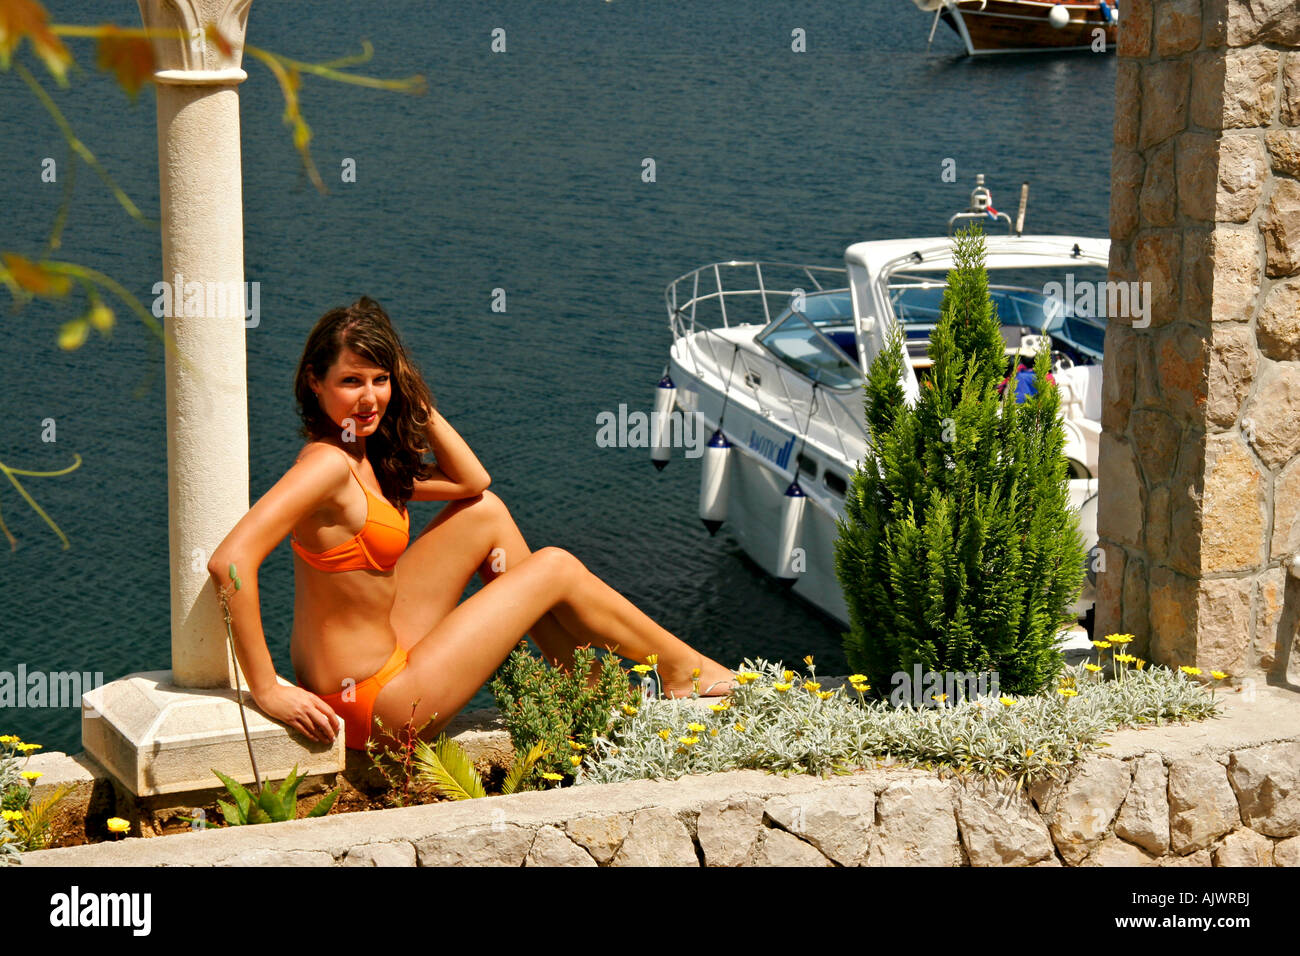 Junge Frau sonnt sich an der Kroatischen Mittelmeerkueste | Young woman is sunning at the Croatian Mediterranean coast Stock Photo